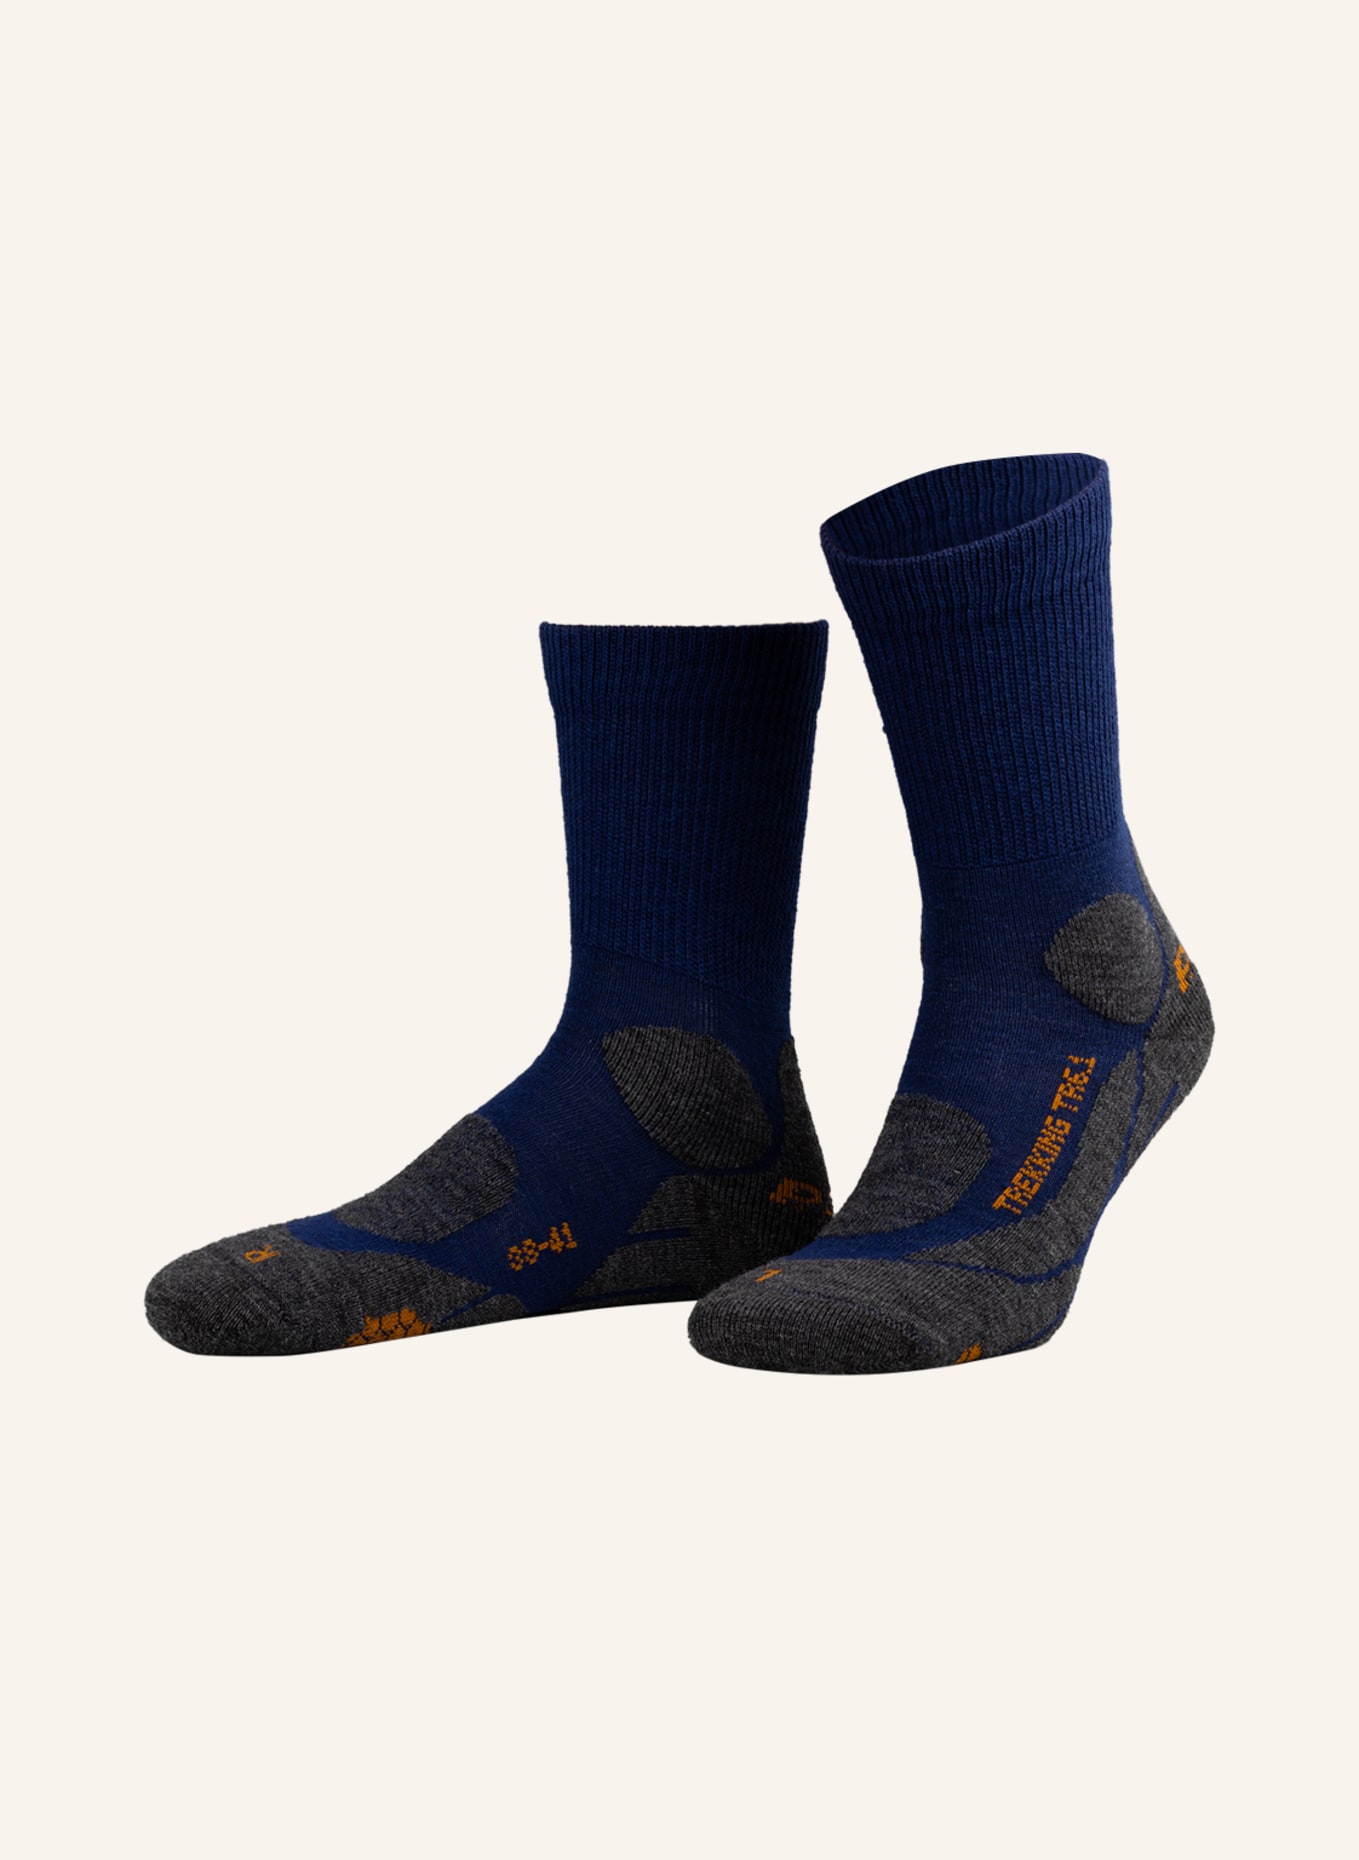 P.A.C. Trekking-Socken TR 6.1 MEDIUM mit Merinowolle, Farbe: DUNKELBLAU/ GRAU (Bild 1)